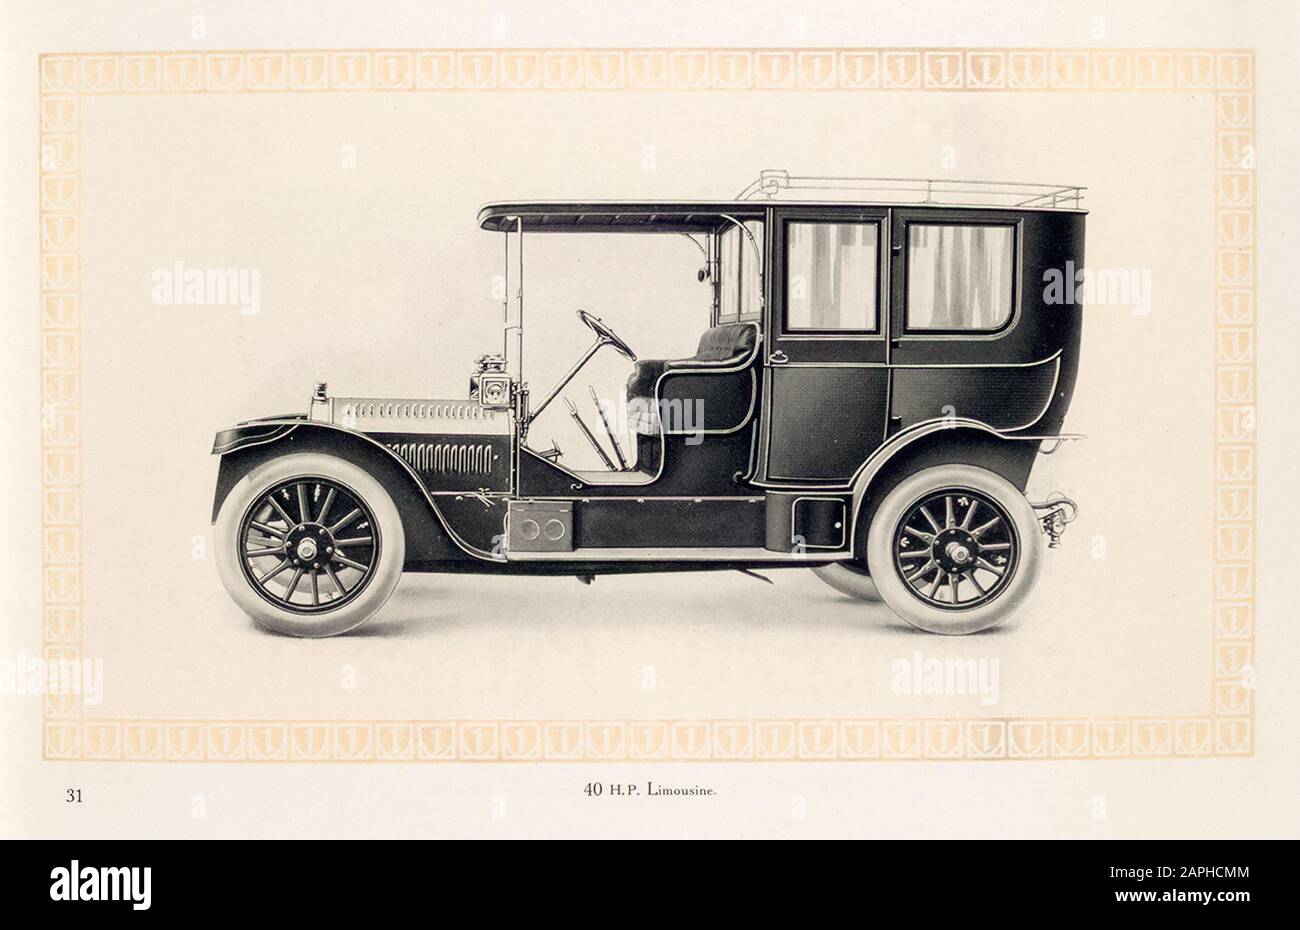 Auto d'epoca, auto a motore Benz, auto, limousine 40 hp, dal catalogo commerciale Benz & Co, illustrazione 1909 Foto Stock